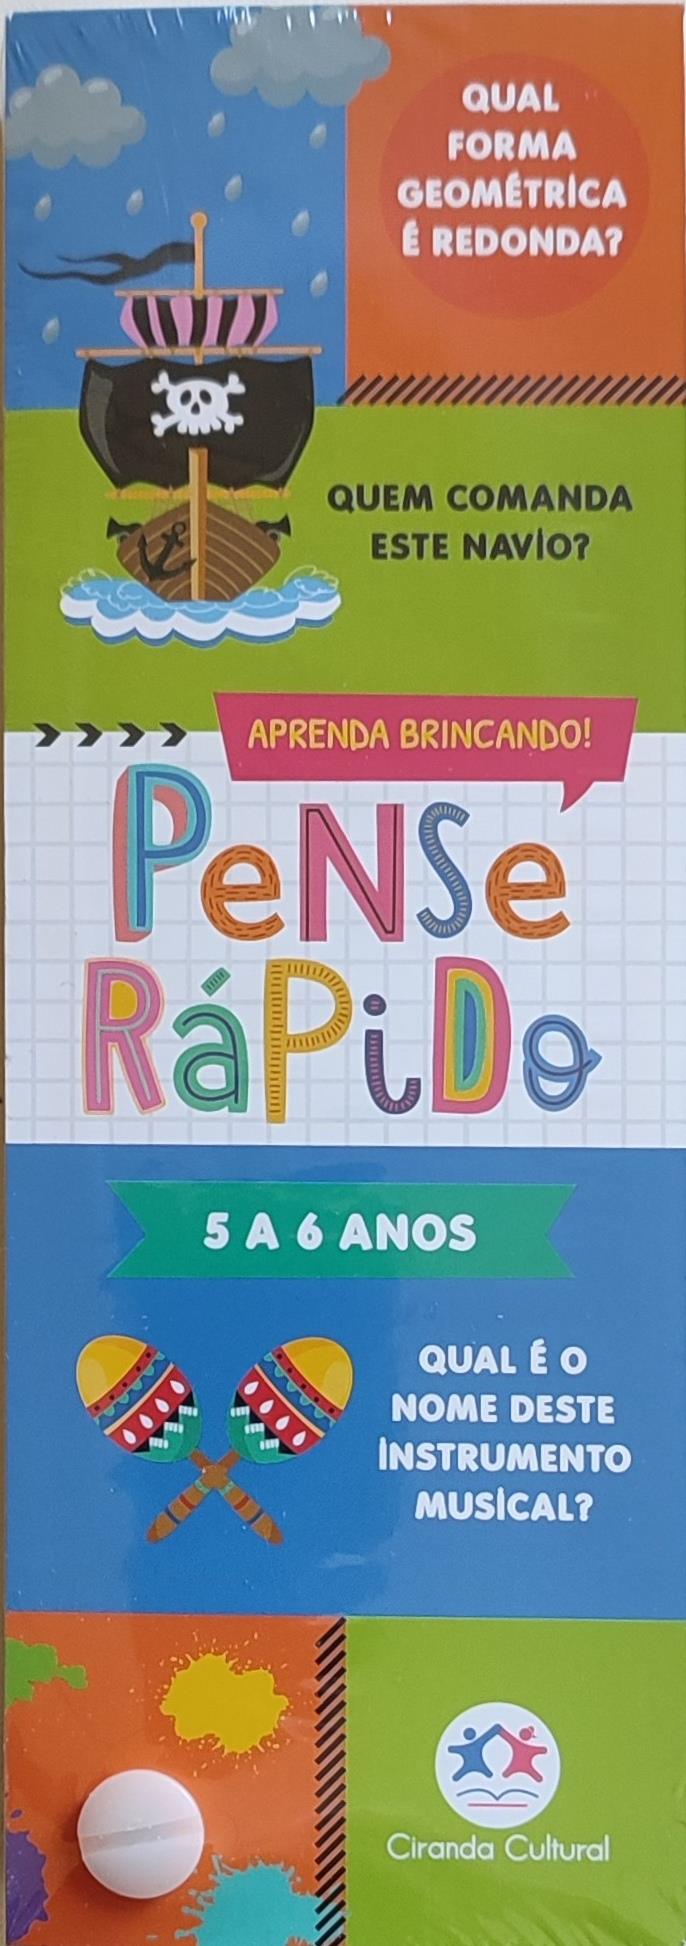 PENSE RPIDO - 5 A 6 ANOS